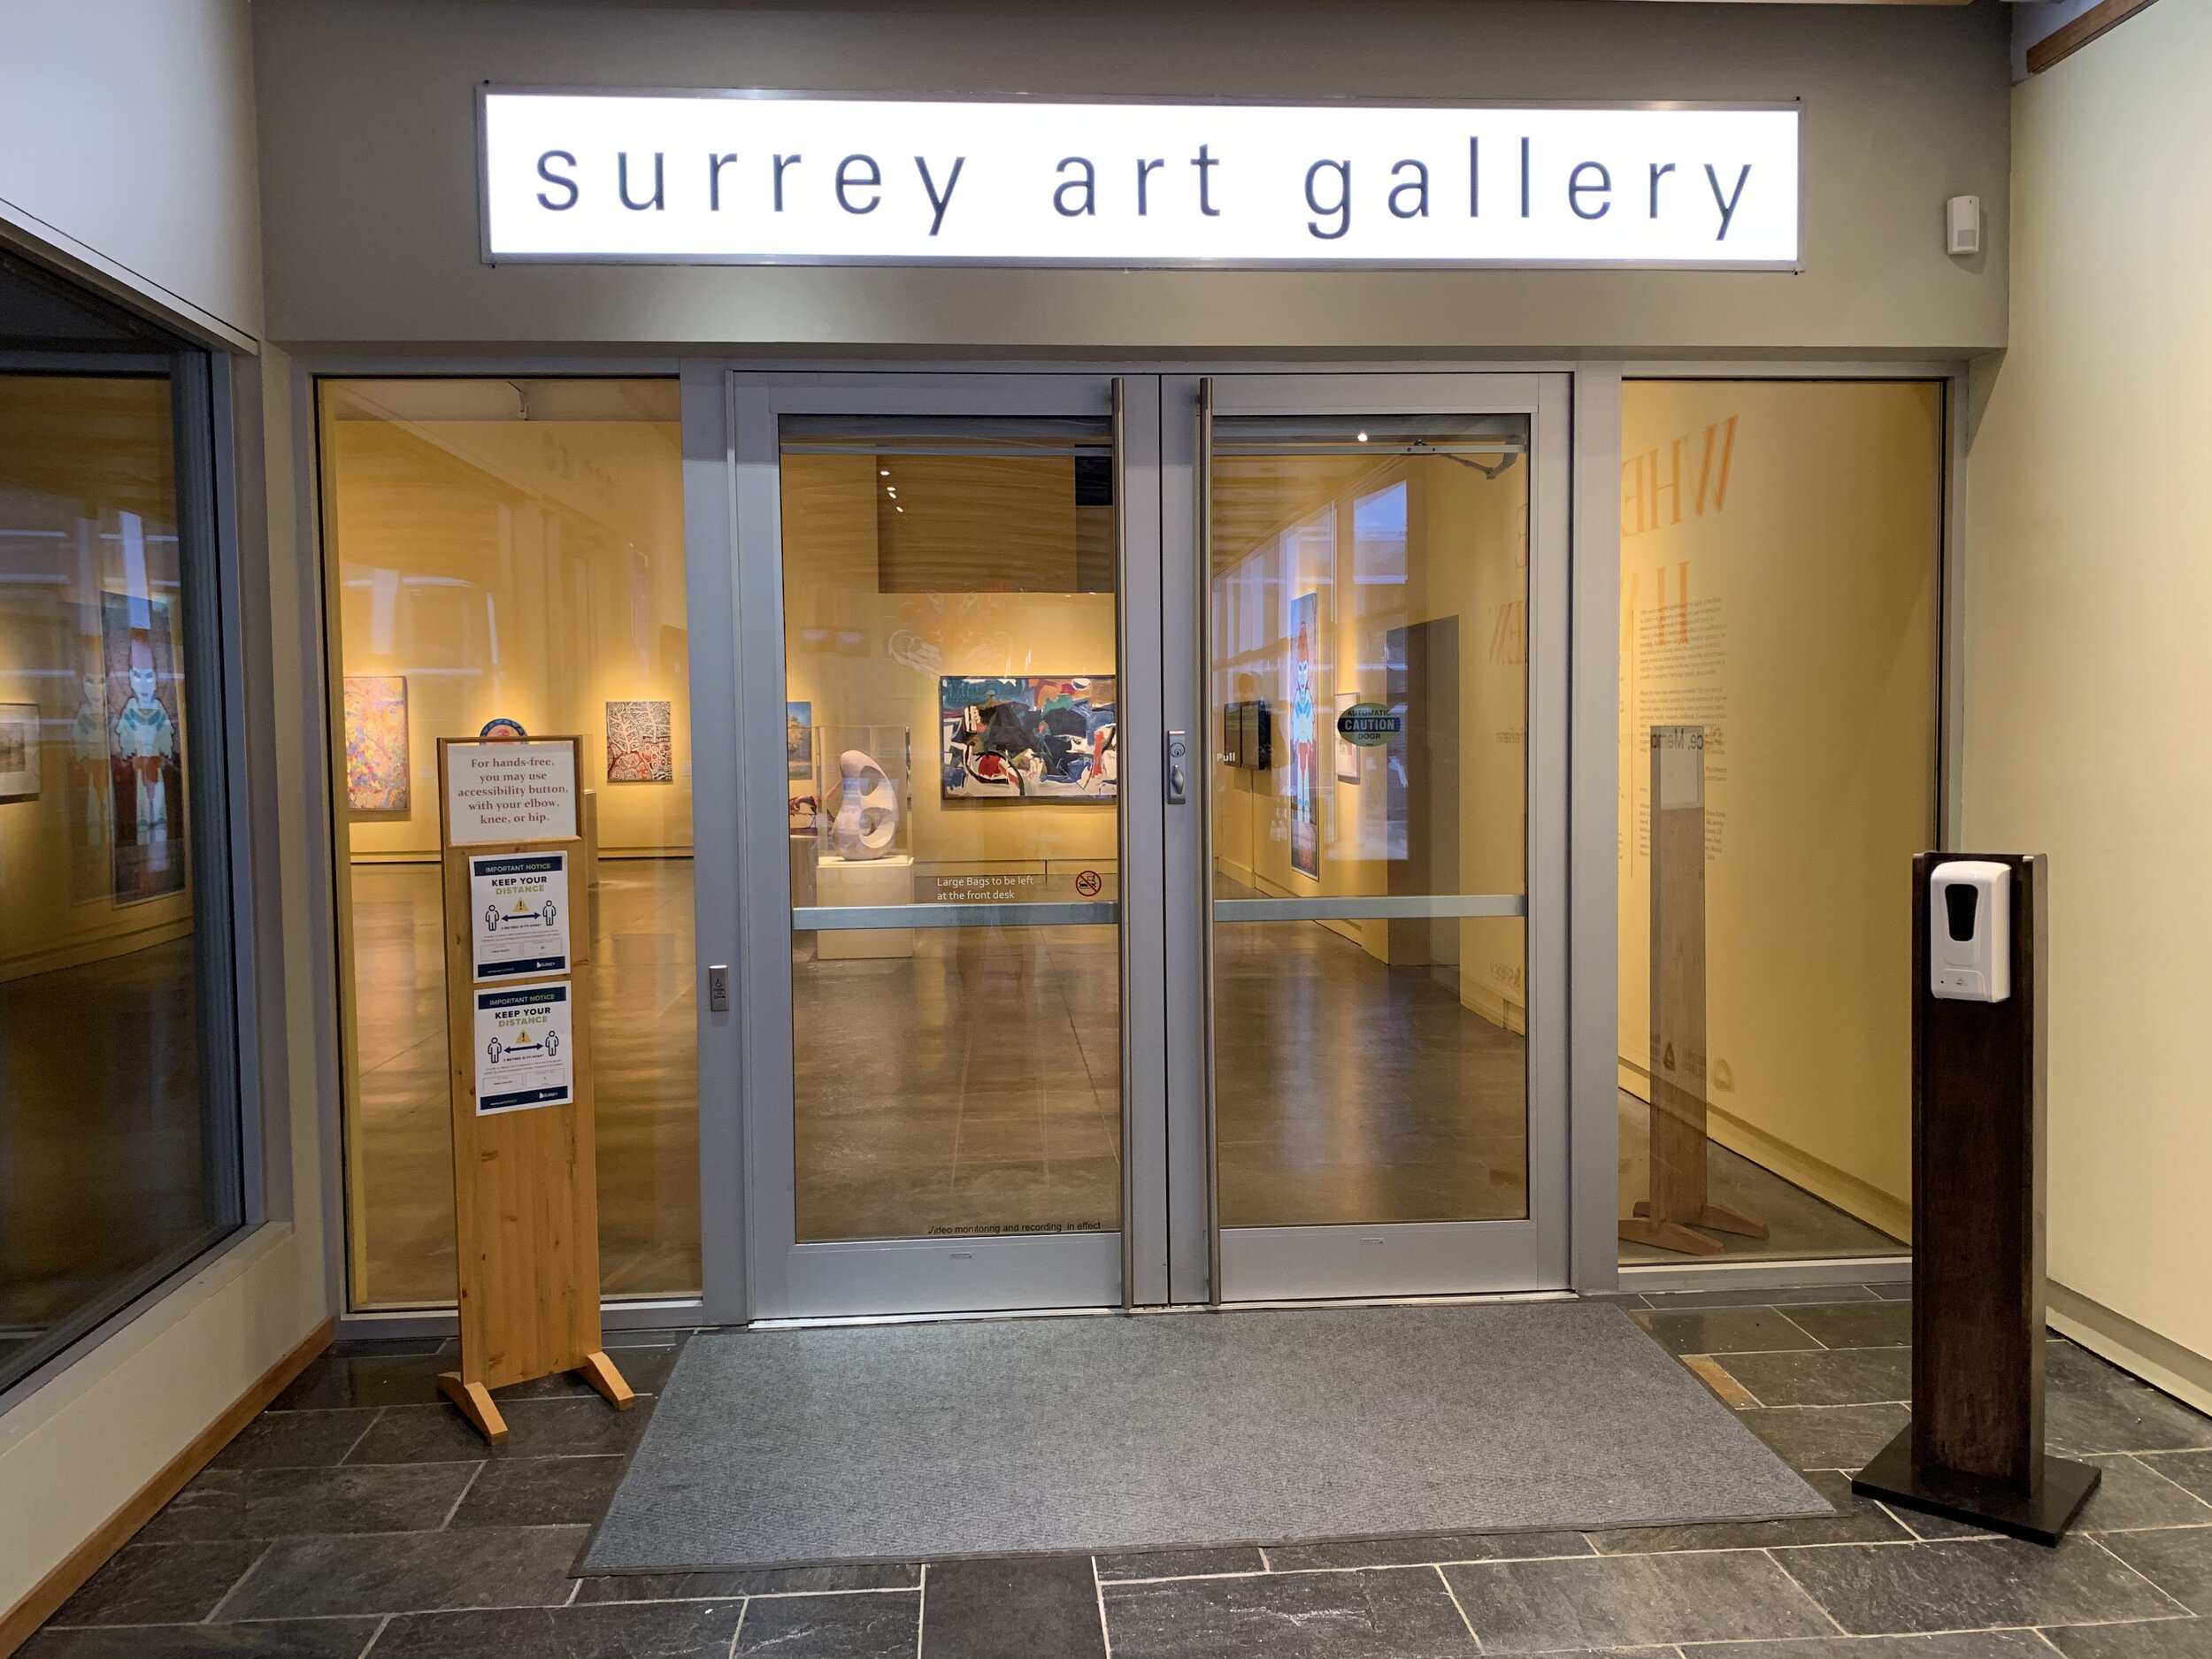 Surrey Art Gallery